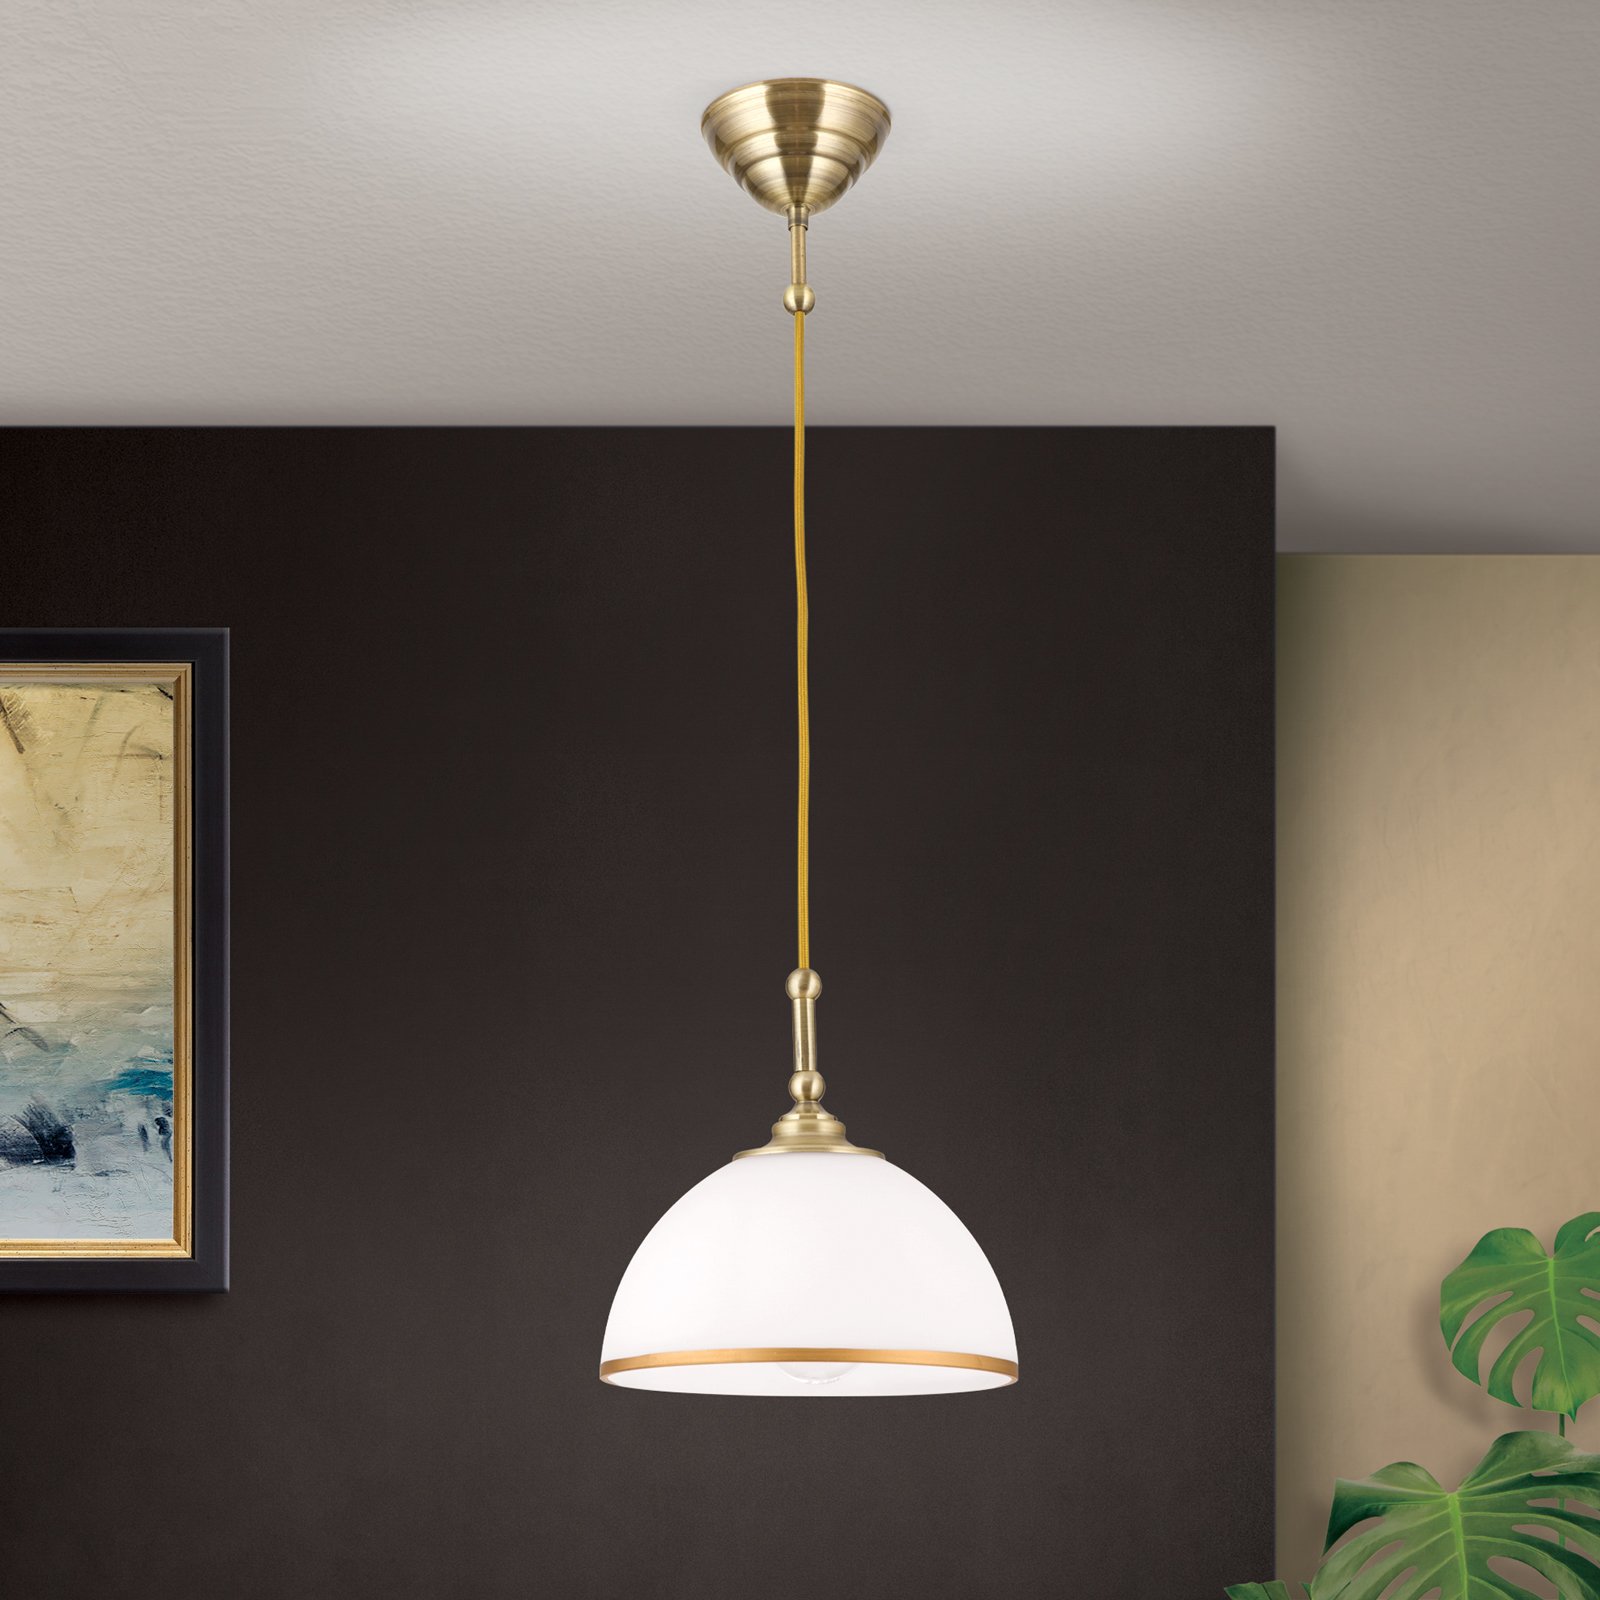 Hanglamp Old Lamp met textielkabel, 1-lamp